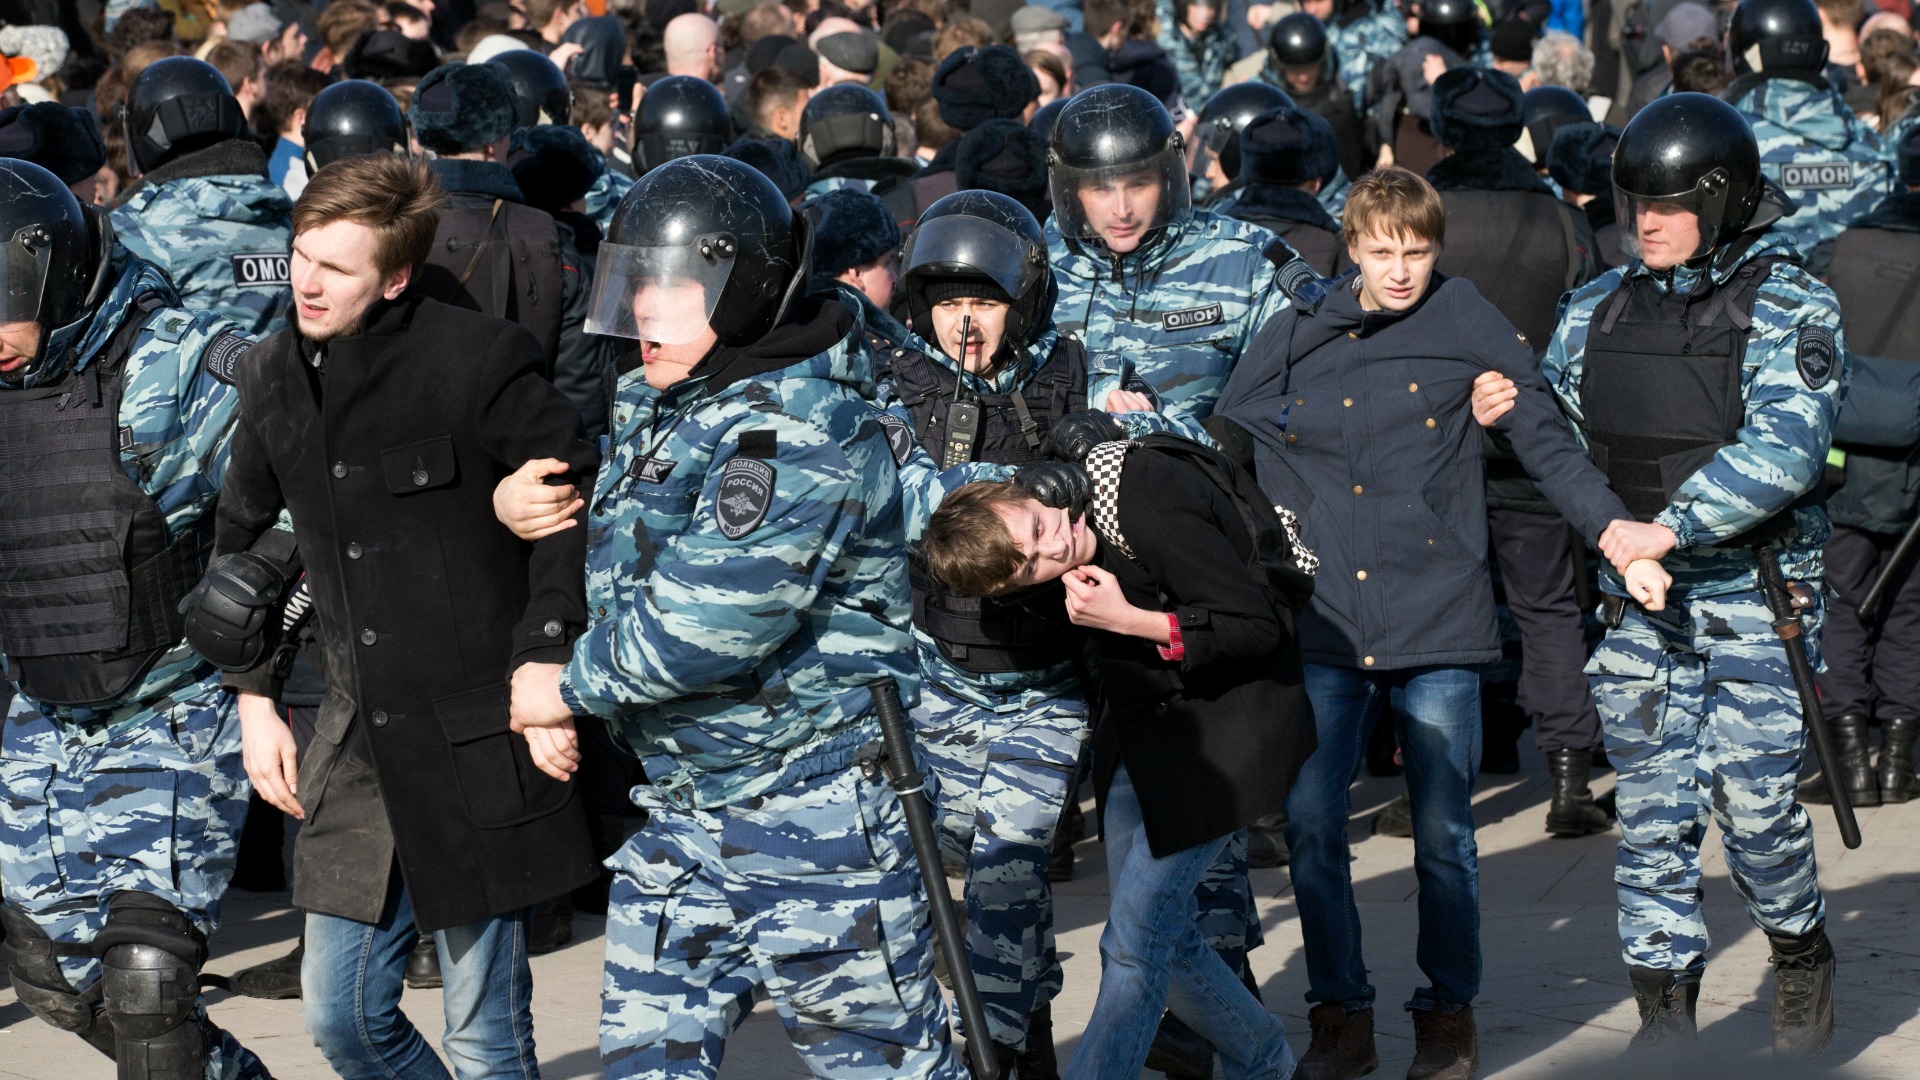 La UE pide a Rusia la liberación inmediata de los ciudadanos detenidos en una manifestación pacífica